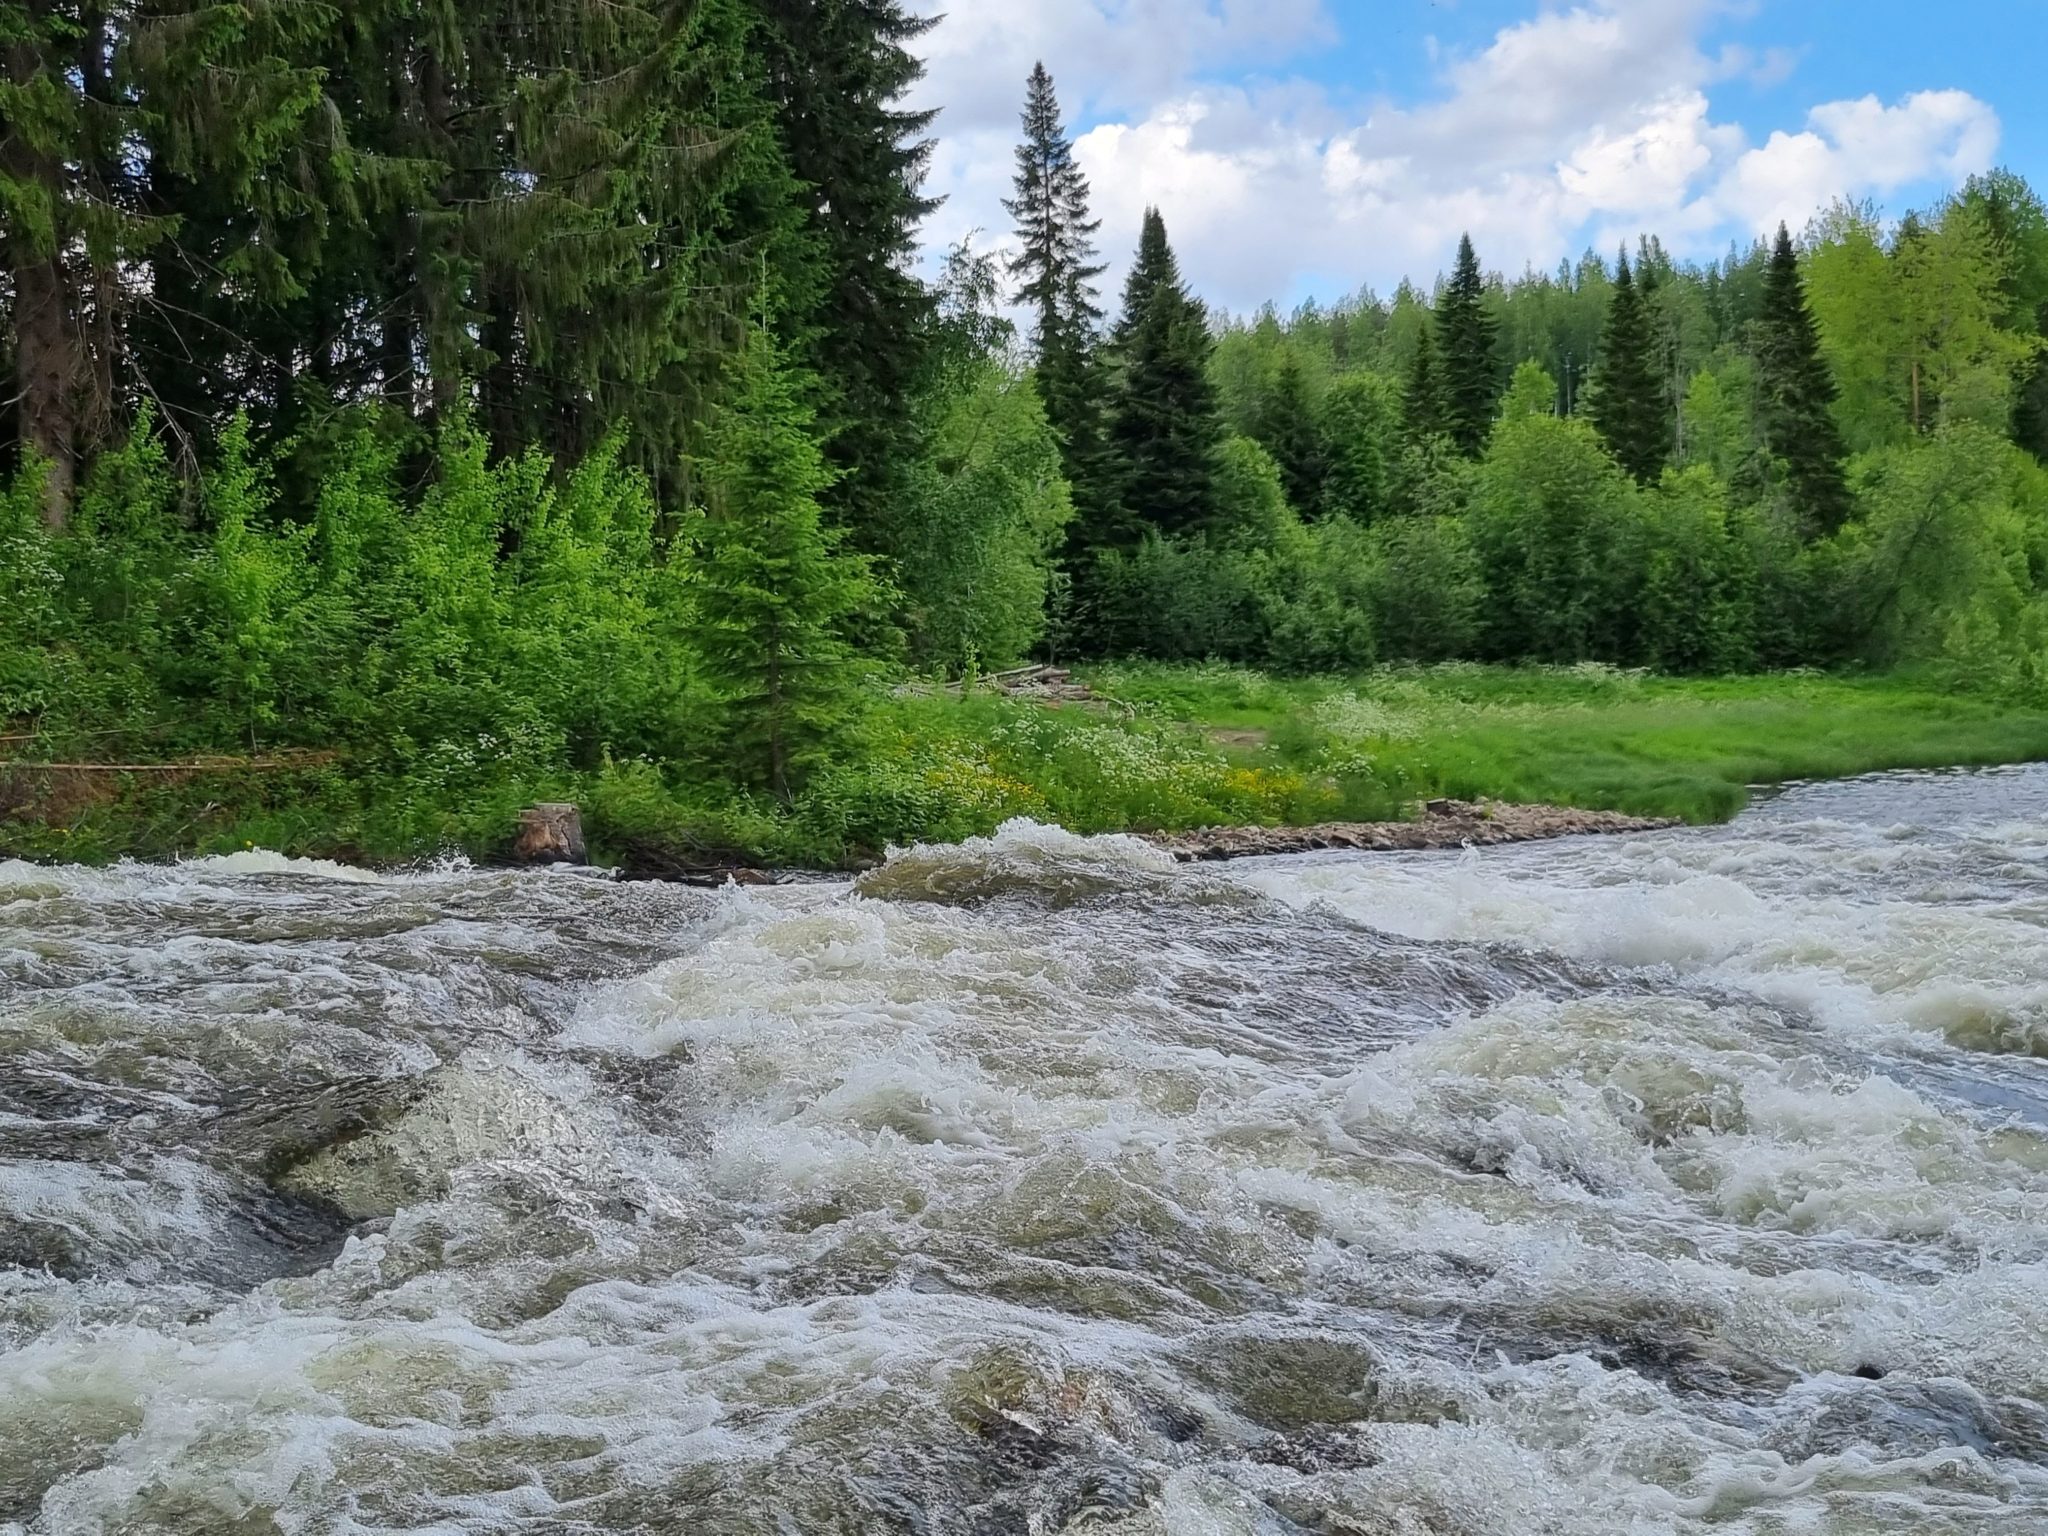 Hiitolanjoki river